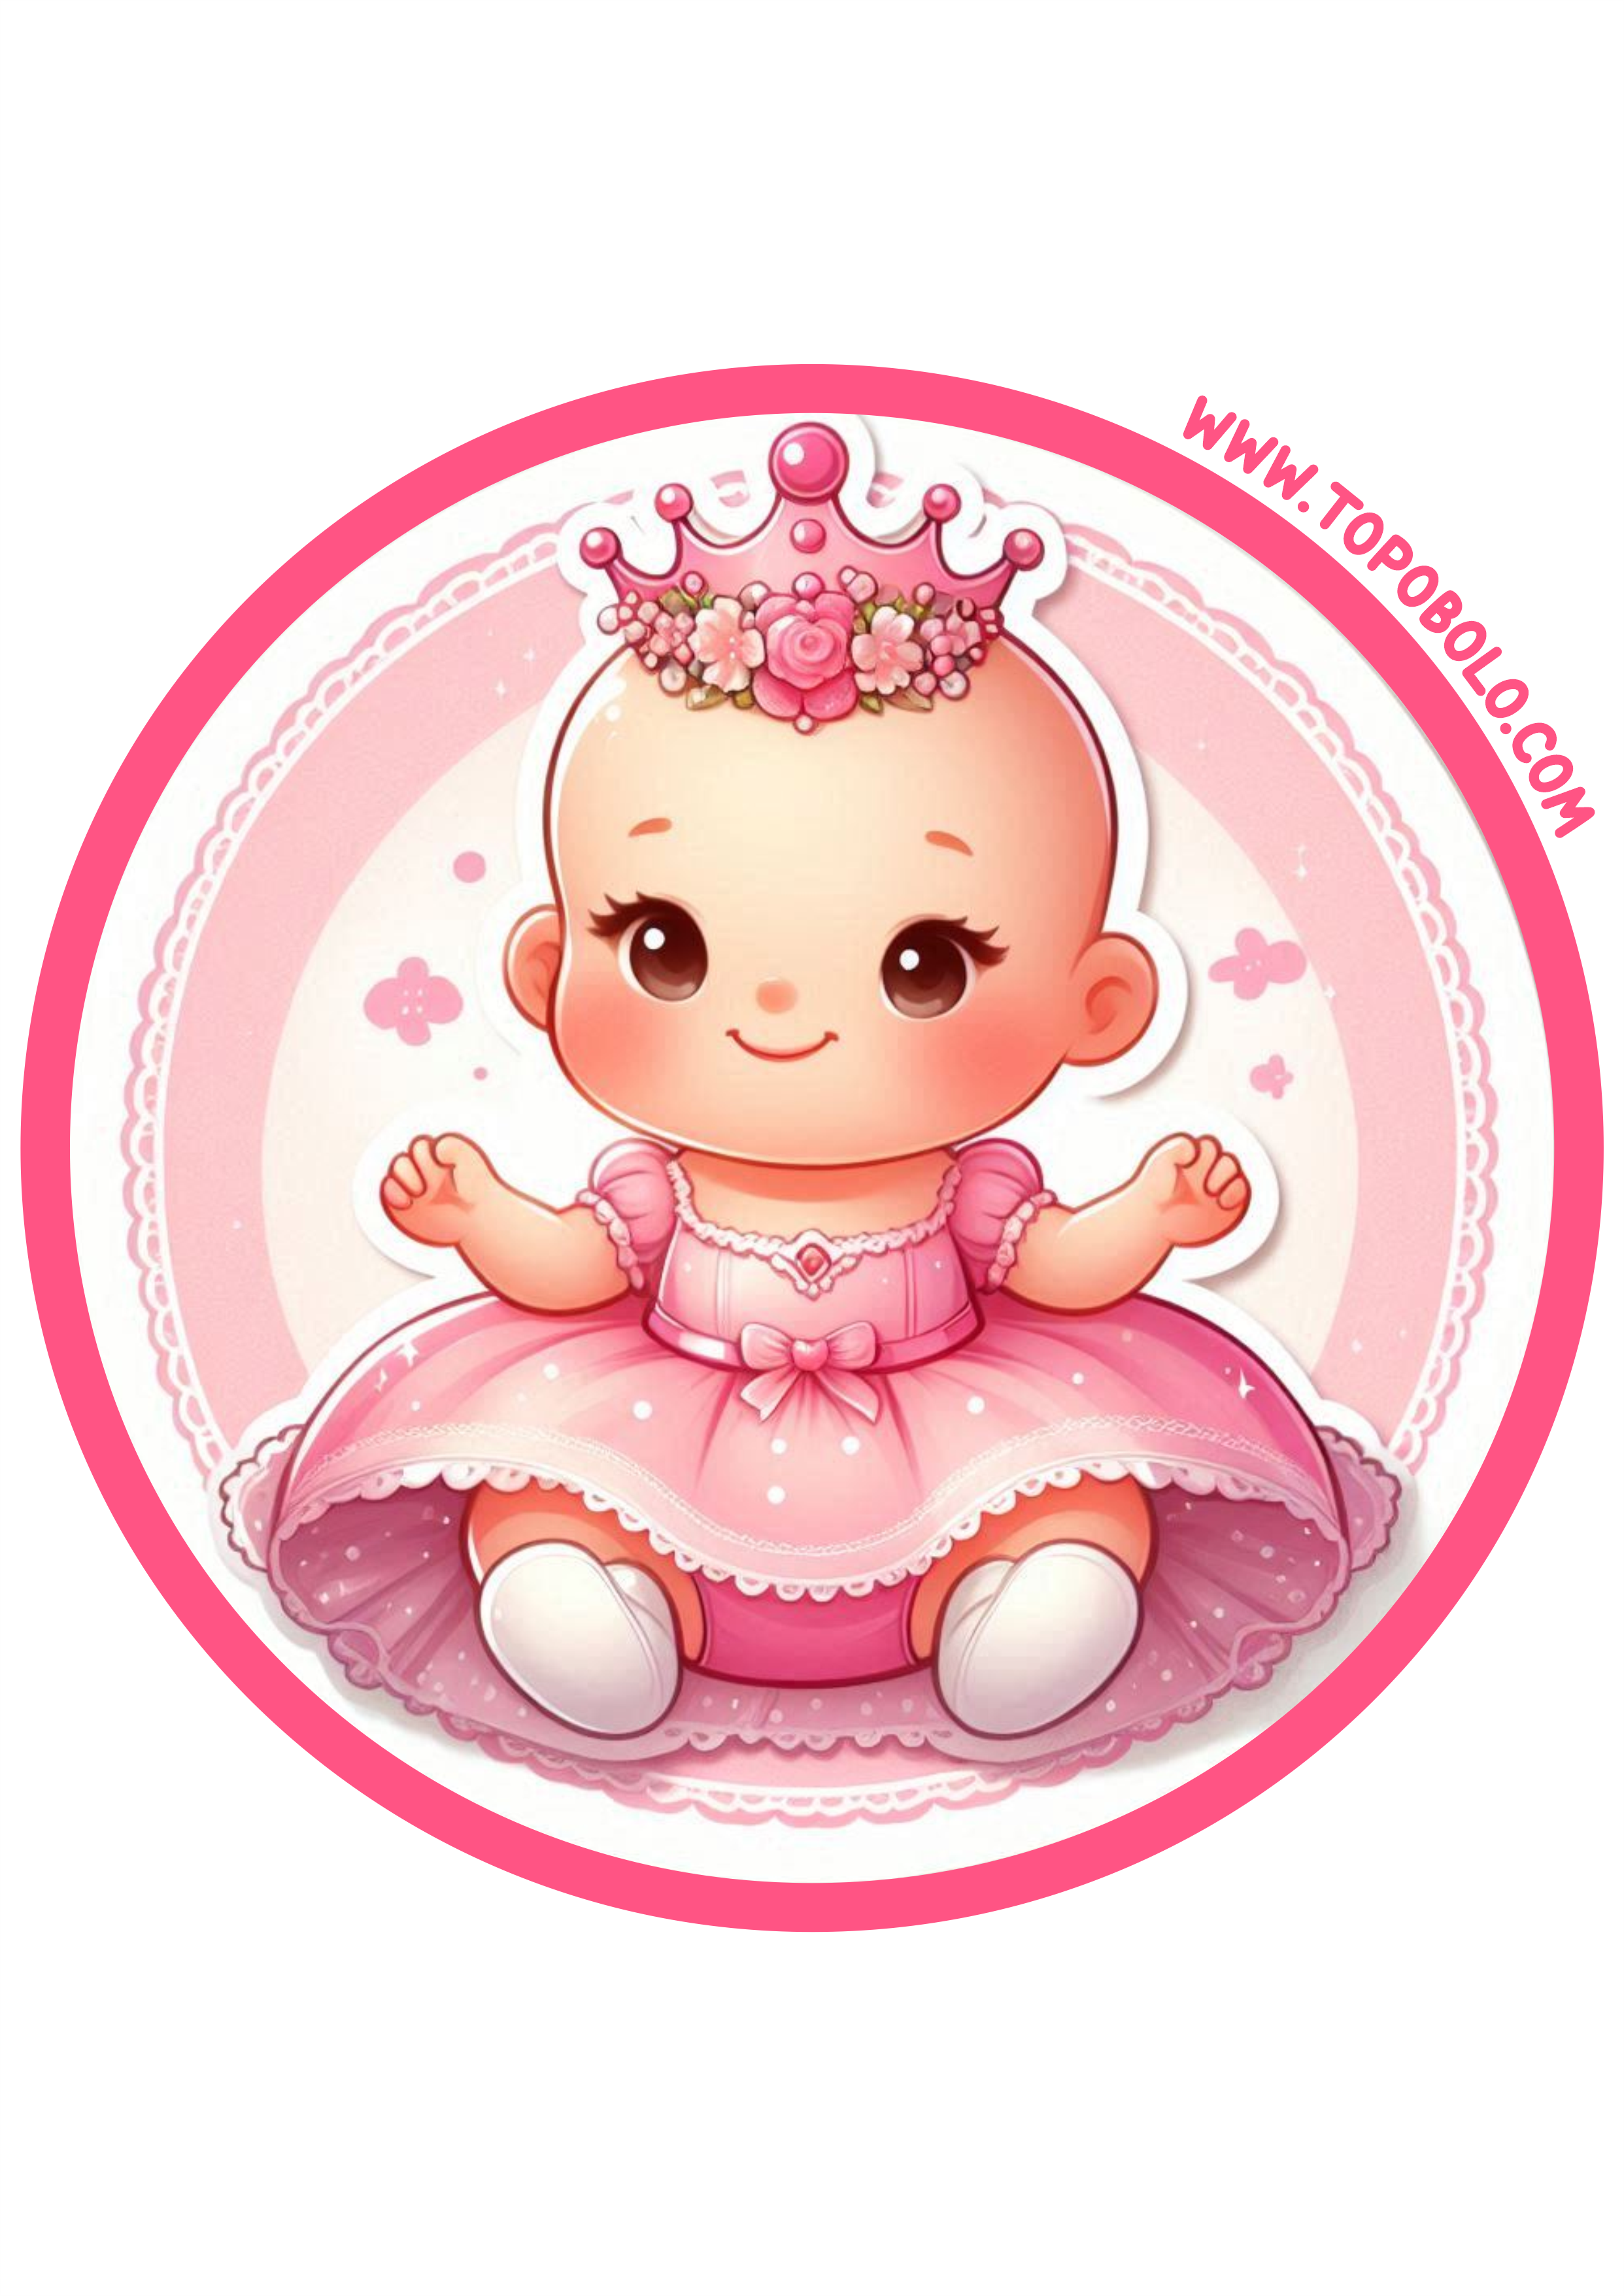 Menina bebê com vestido rosa e coroa de princesa adesivo redondo para decoração de aniversário pronto para imprimir png